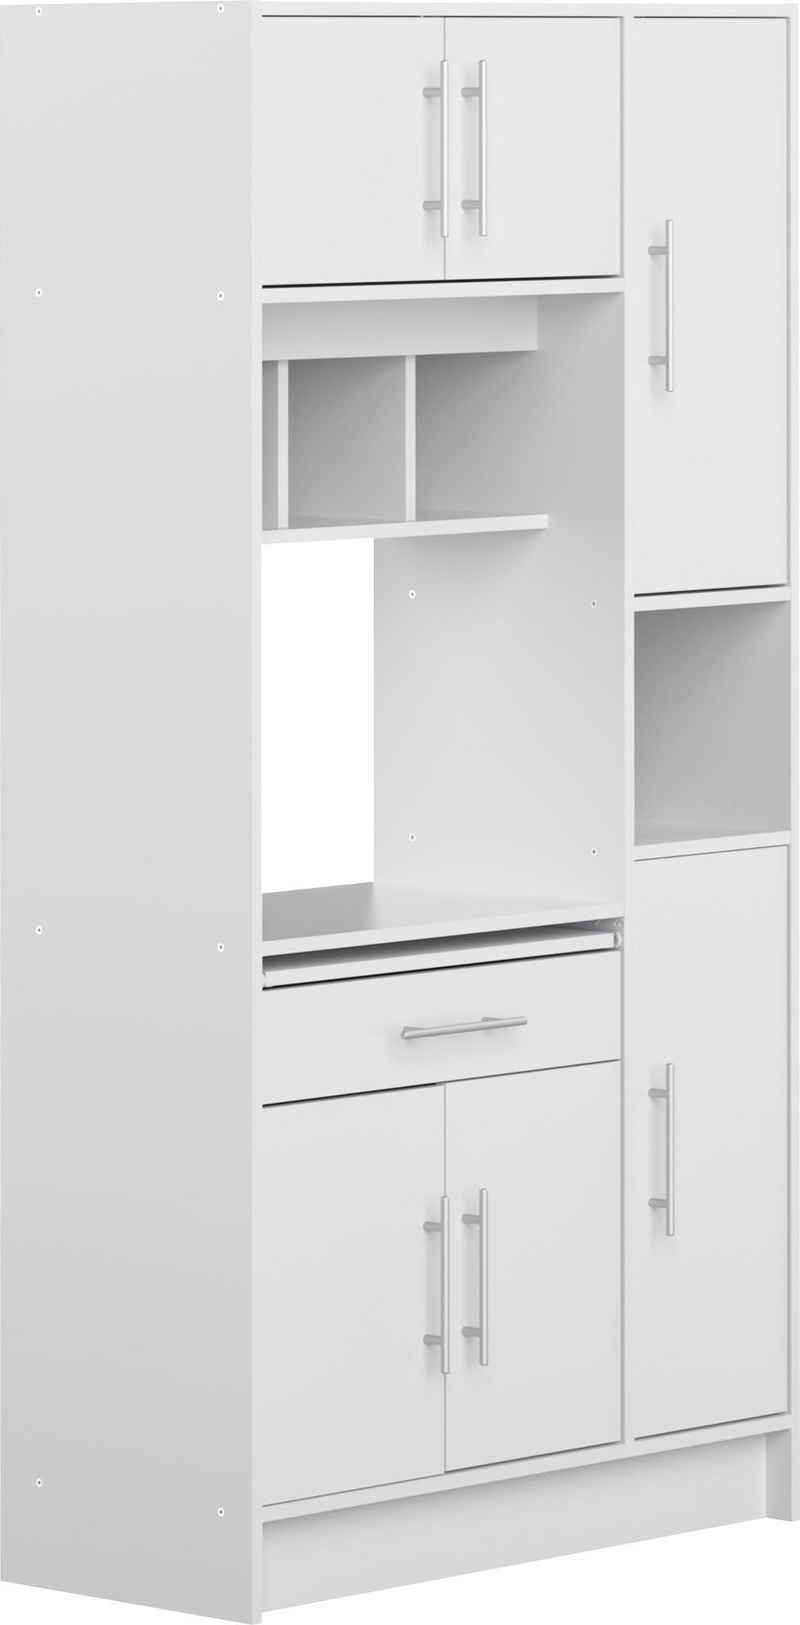 TemaHome Küchenbuffet »Louise« ausziehbarer Kleiderschrank, mit Fach für eine Mikrowelle und vielen Fächern, Höhe 180 cm